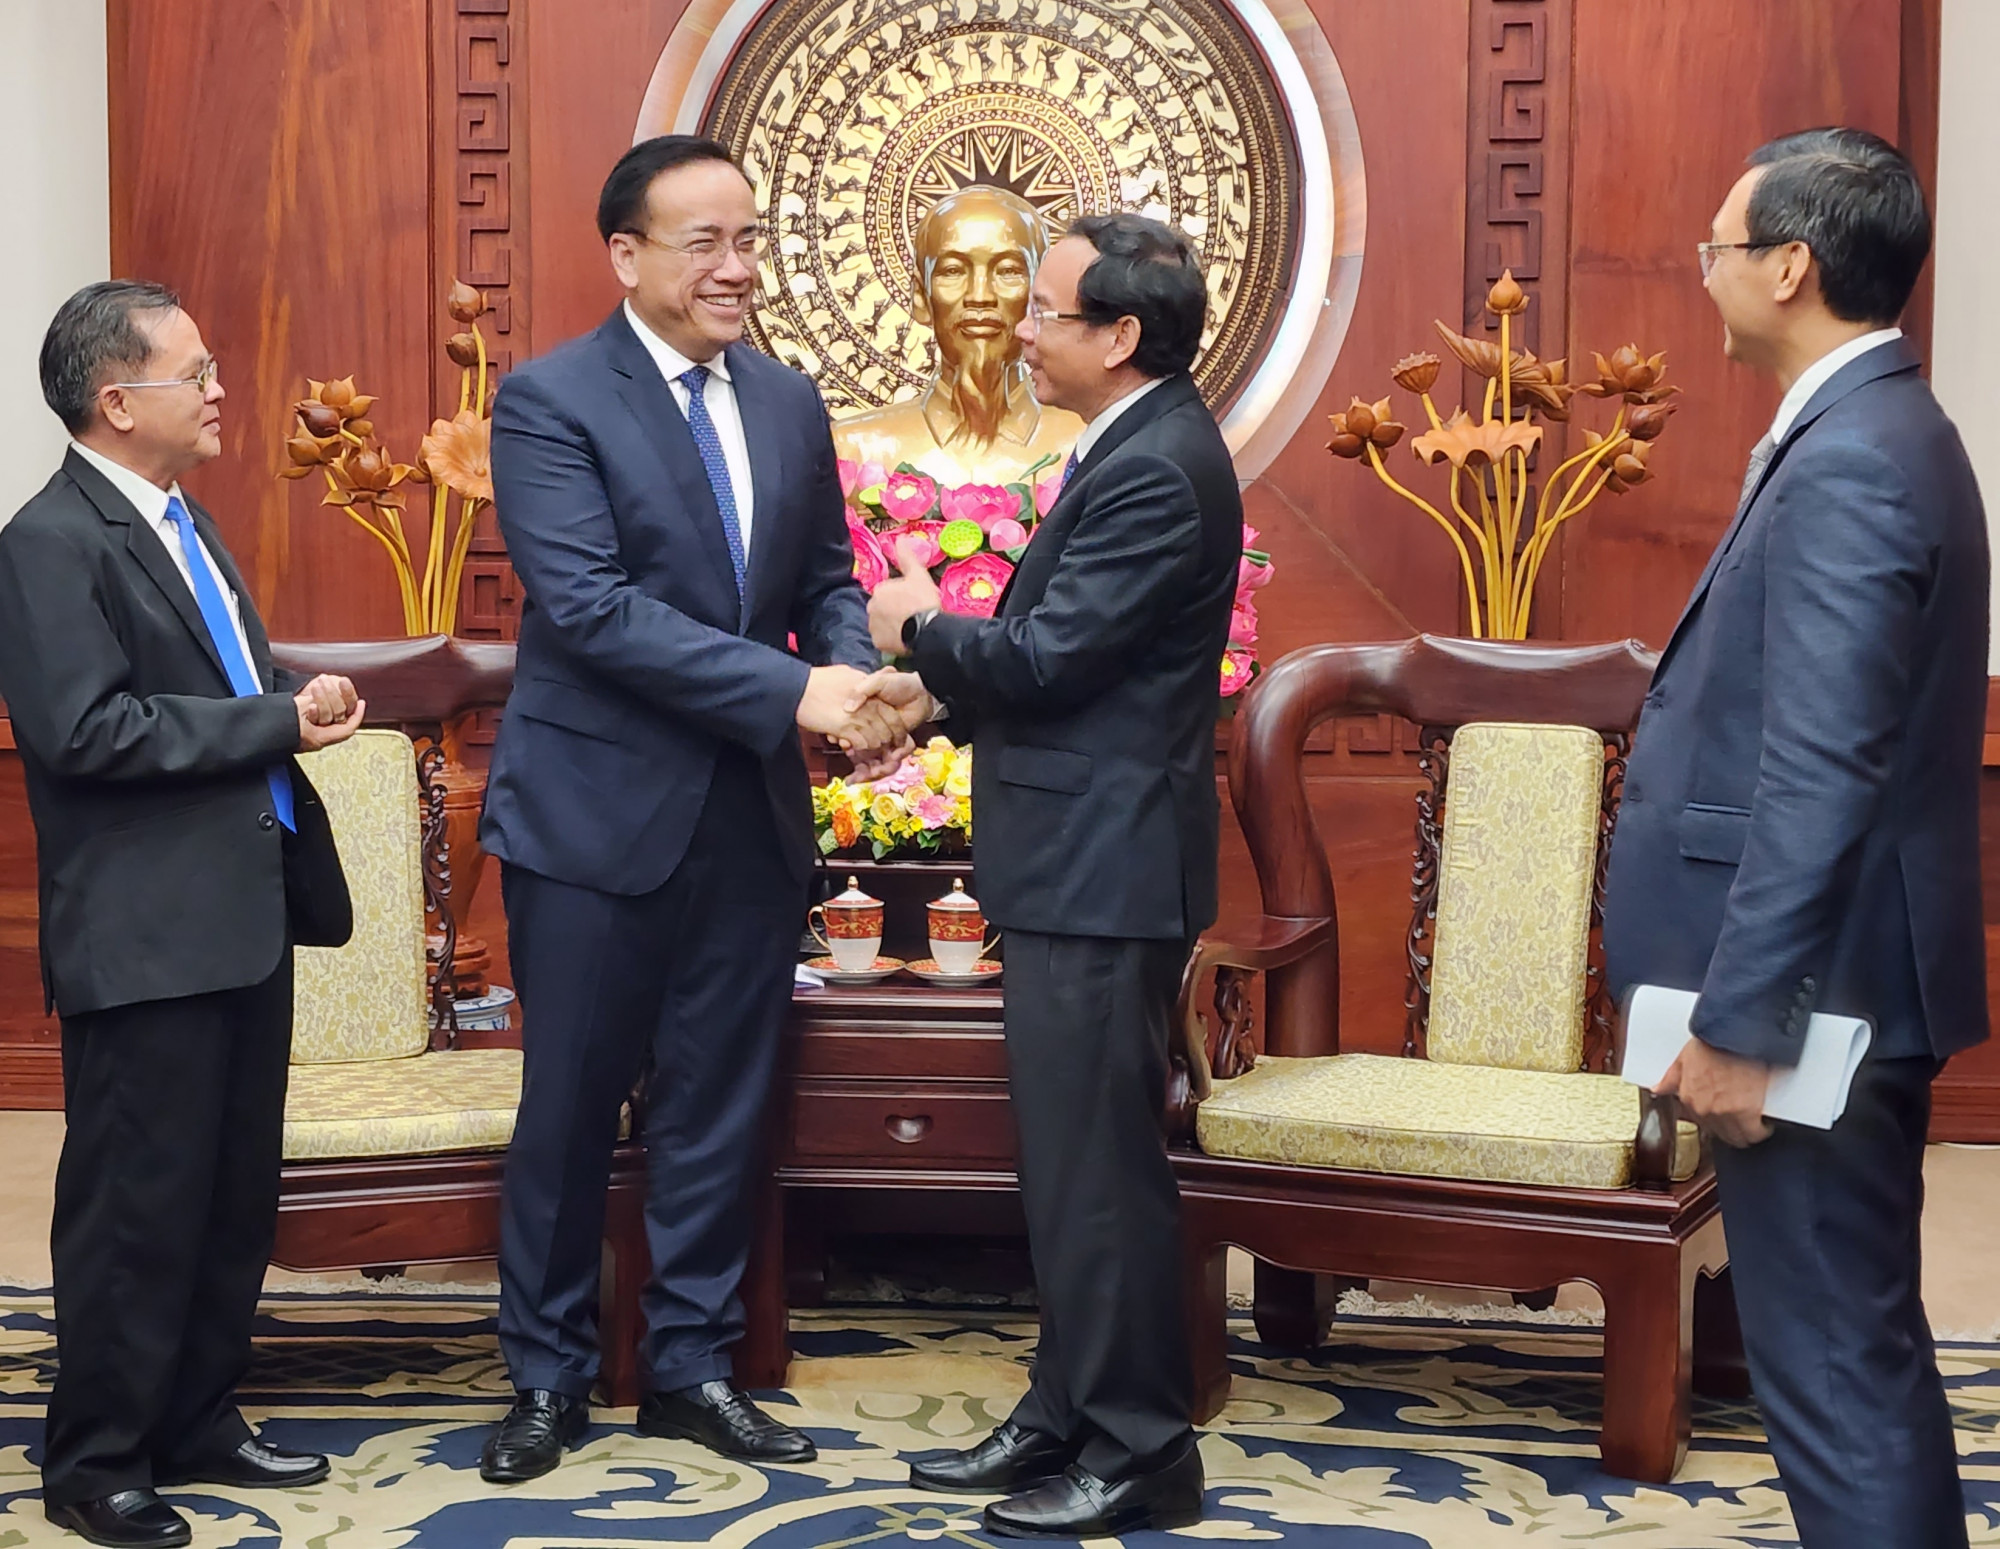 Mối quan hệ thân thiết giữa Việt Nam và Campuchia đã được vun đắp qua nhiều thế hệ